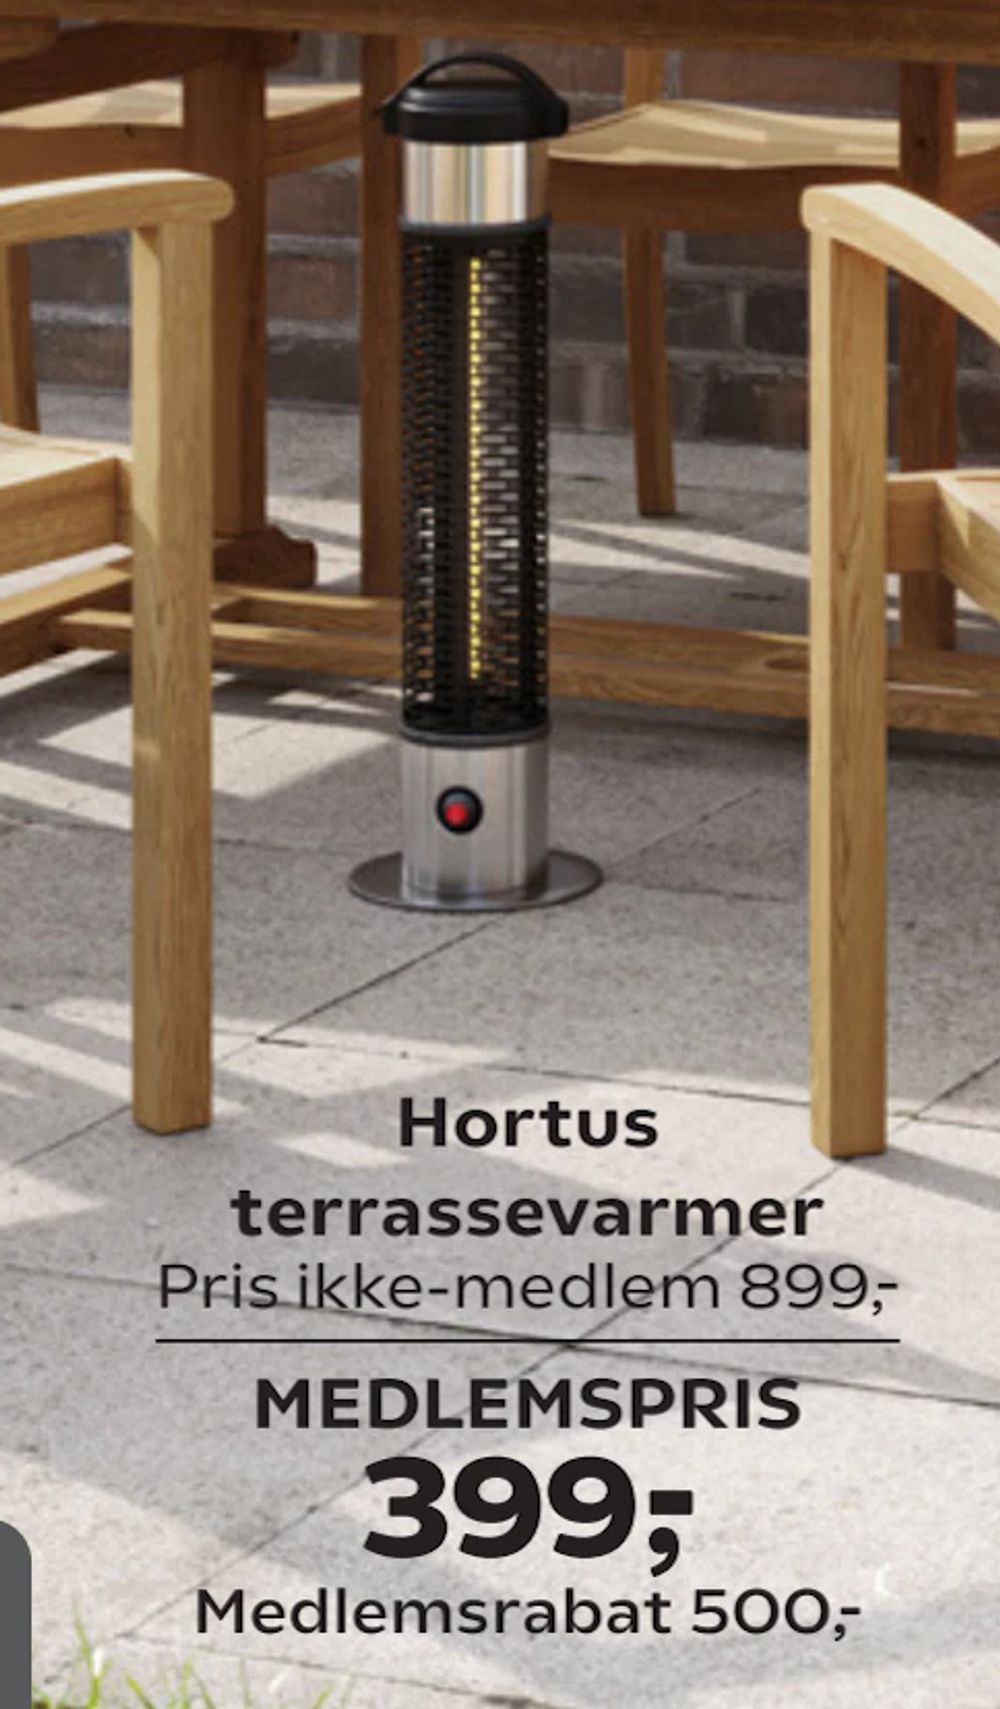 Tilbud på Hortus terrassevarmer fra Coop.dk til 899 kr.